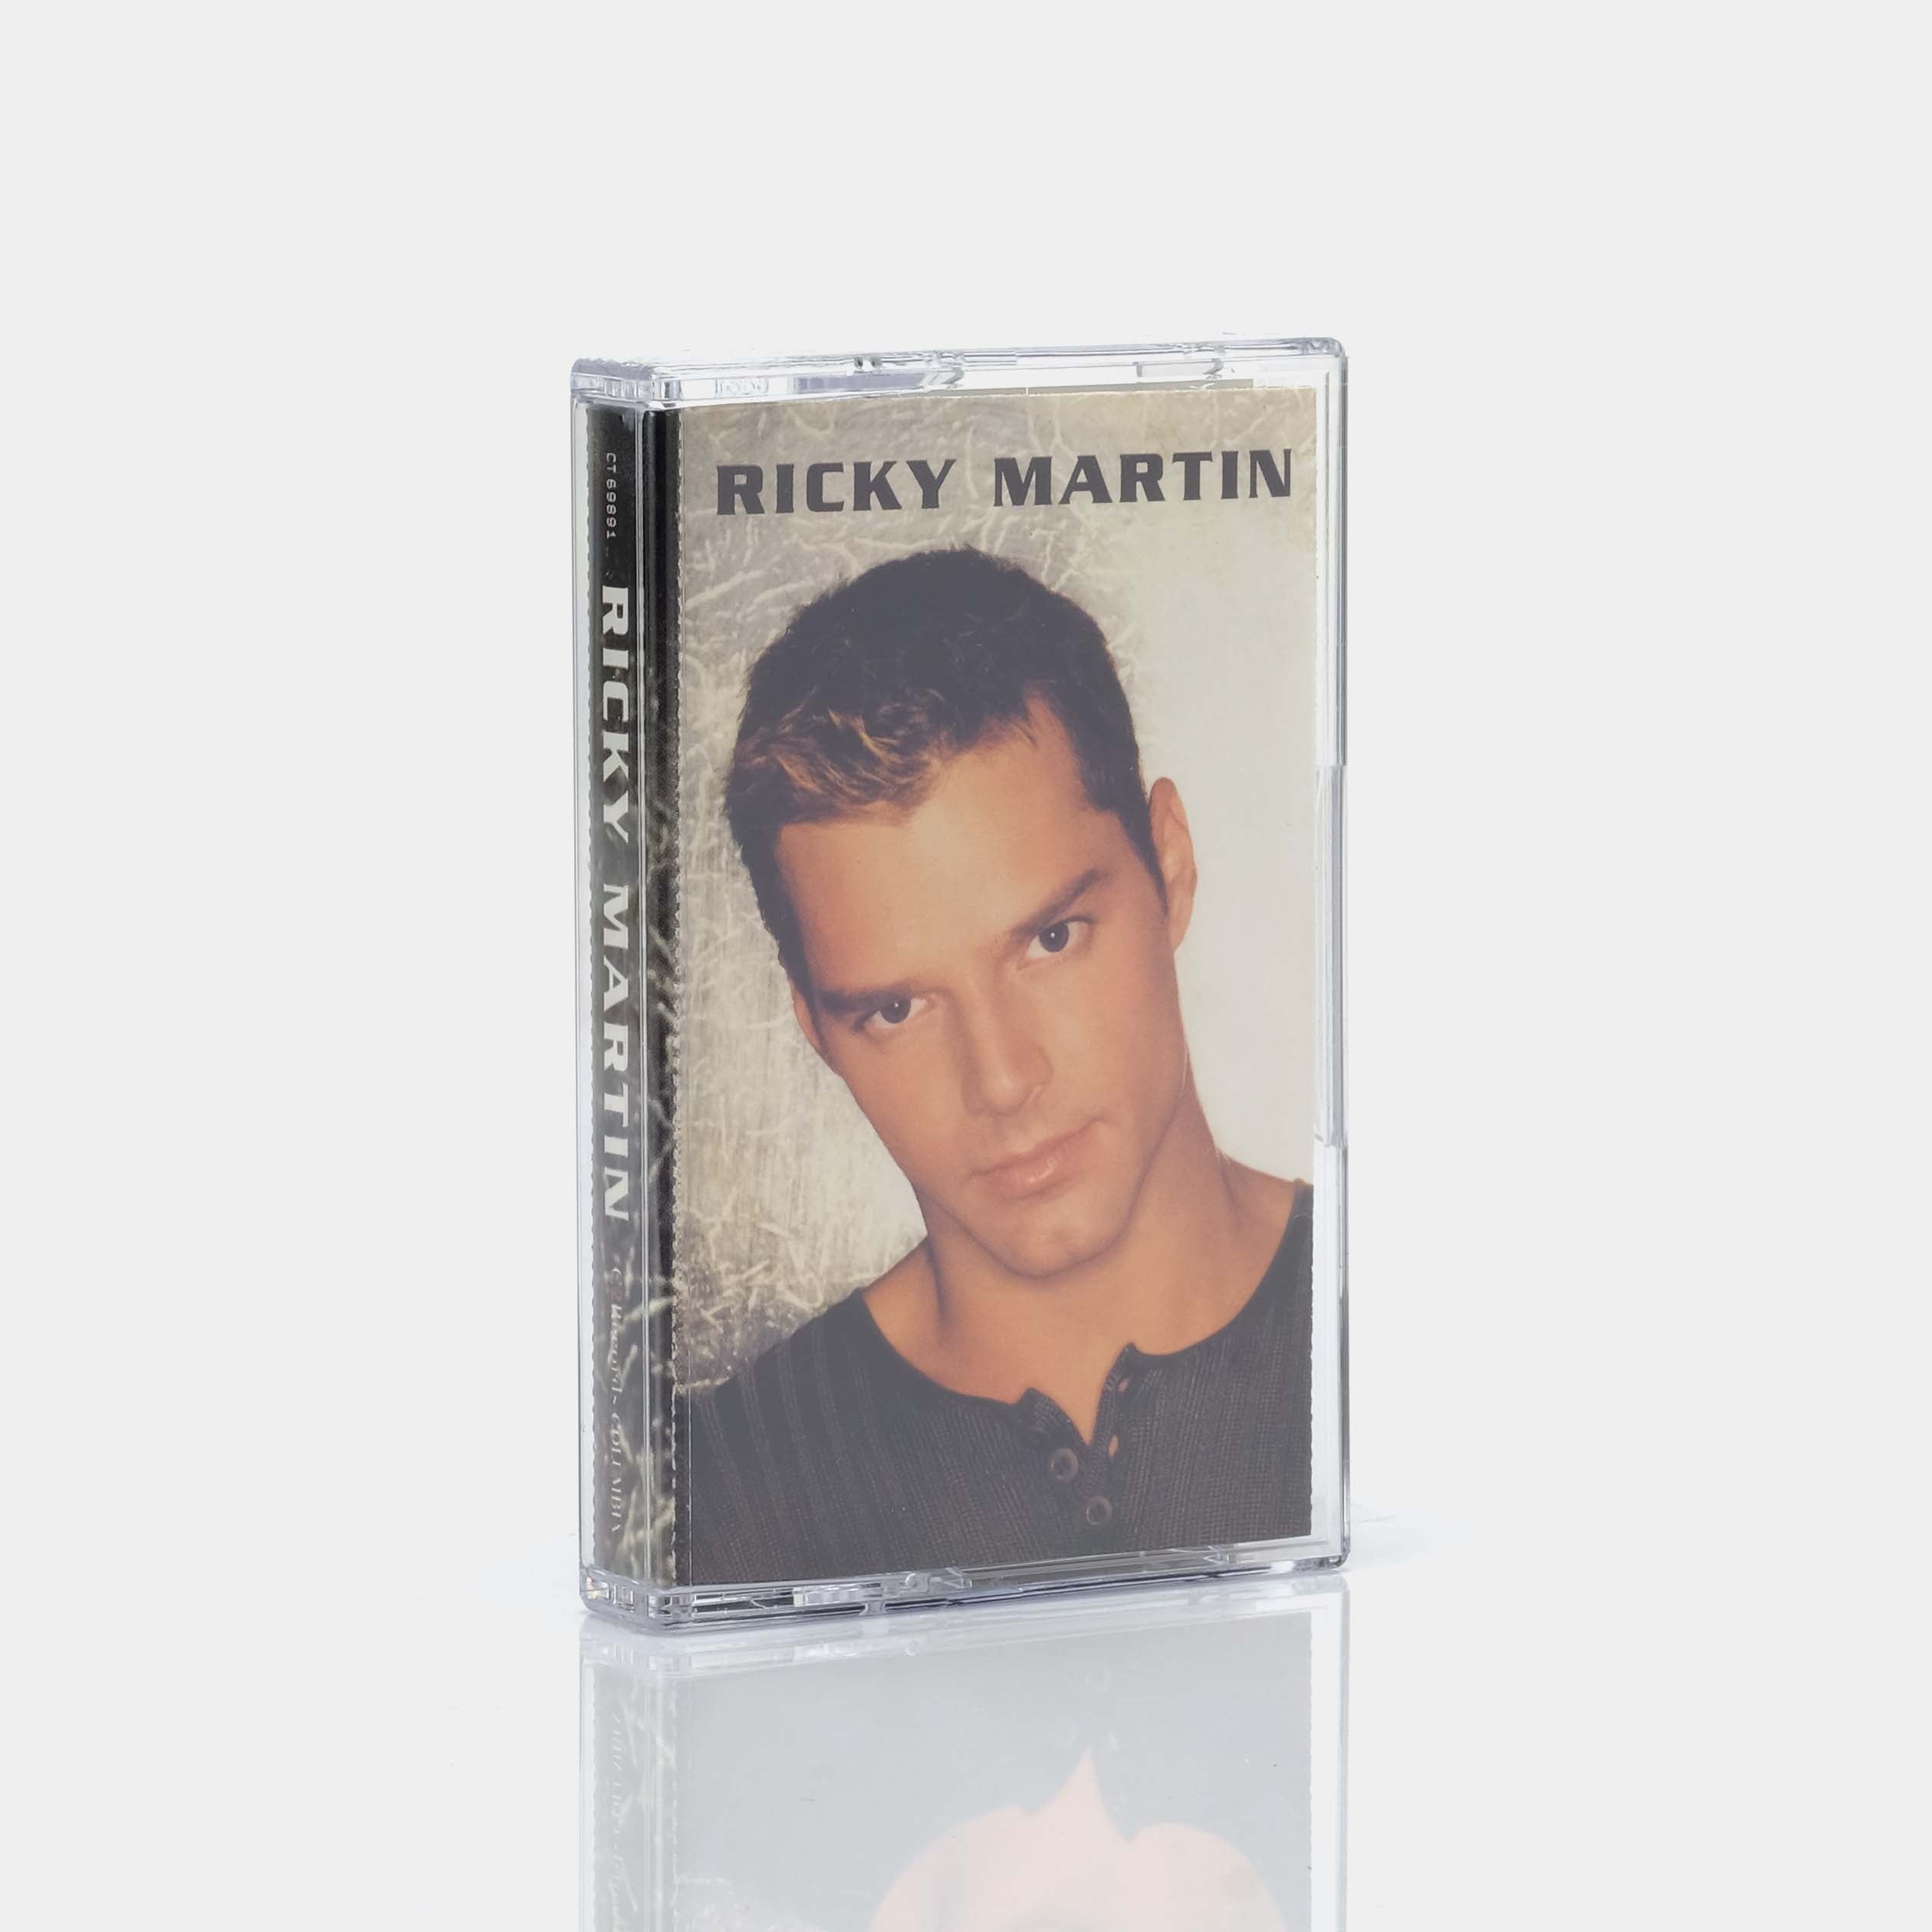 Ricky Martin - Ricky Martin Cassette Tape